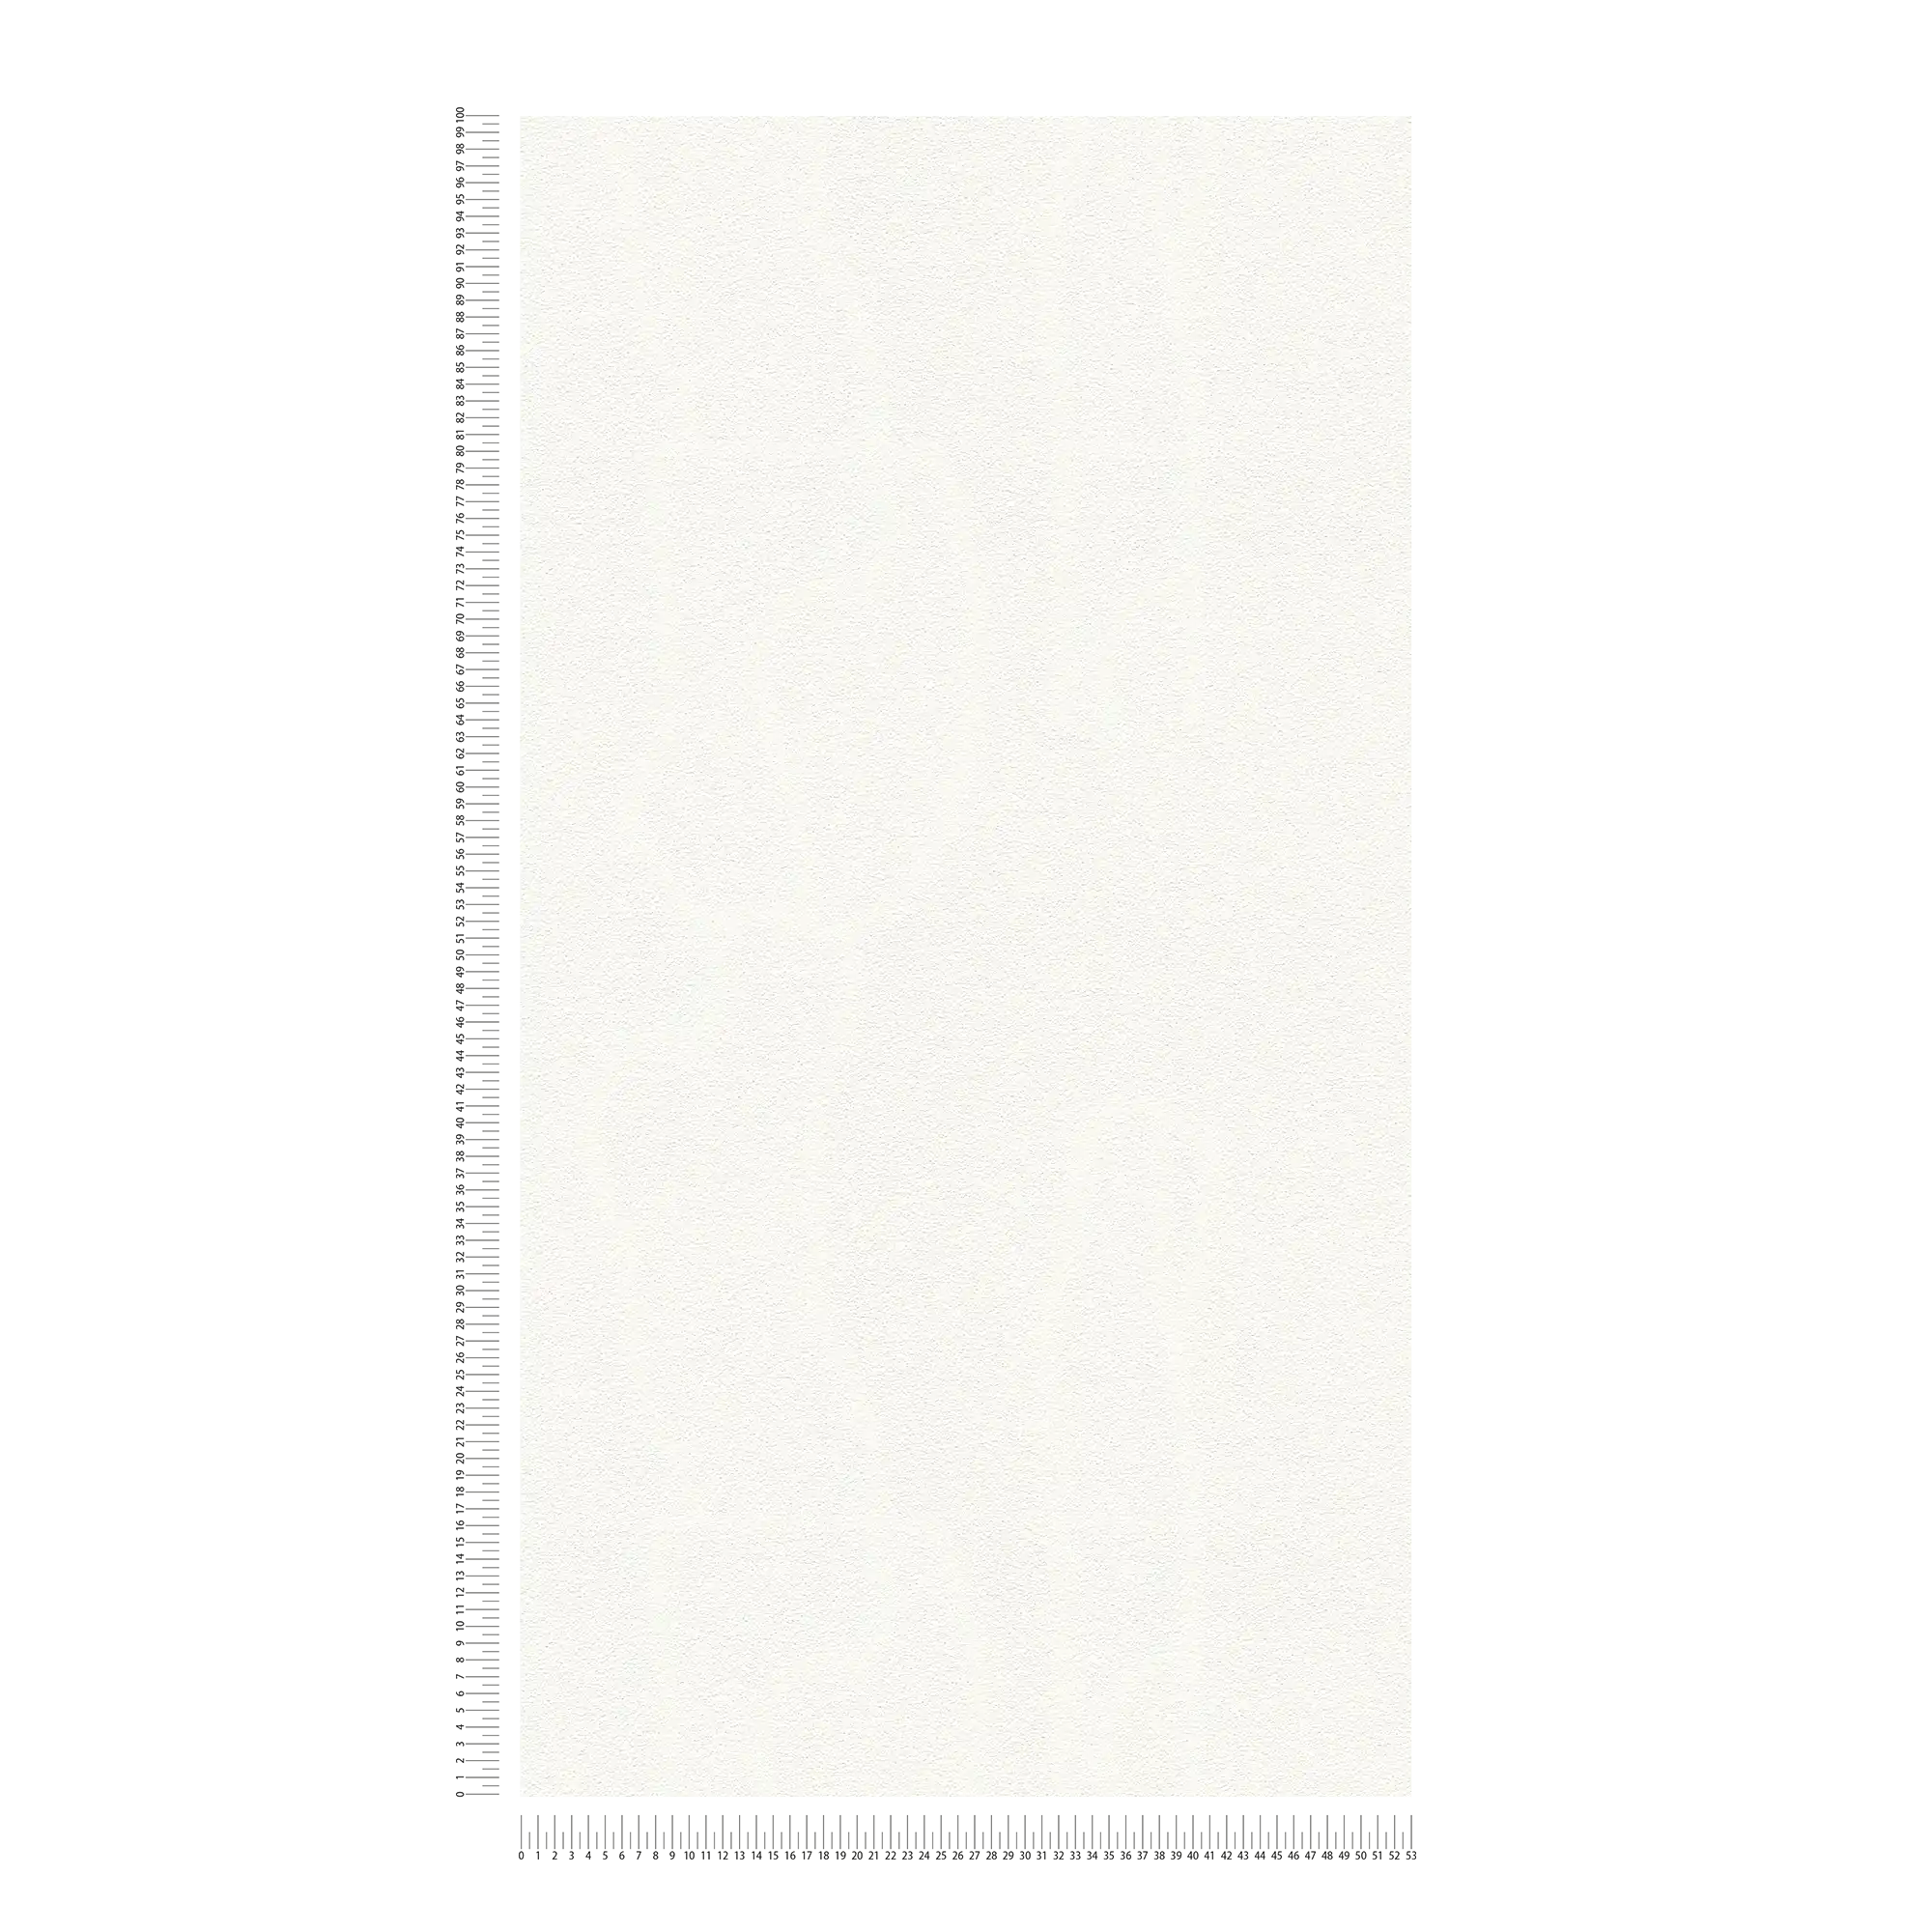             Papel pintado blanco liso con estructura de espuma bidimensional
        